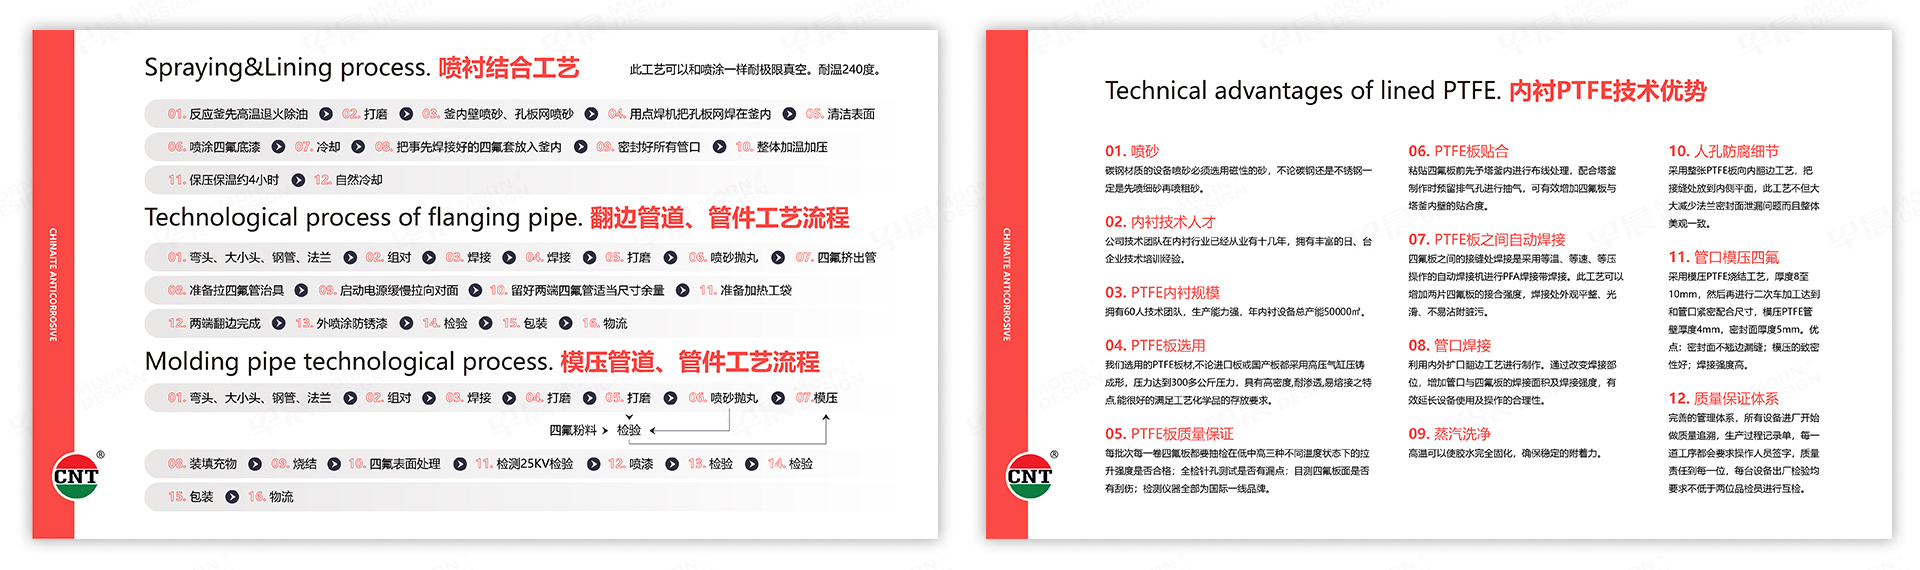 PPT设计,演示稿设计,苏州,无锡,常州,南通,泰州,镇江,南京,扬州,驰耐特,PPT制作,设计公司